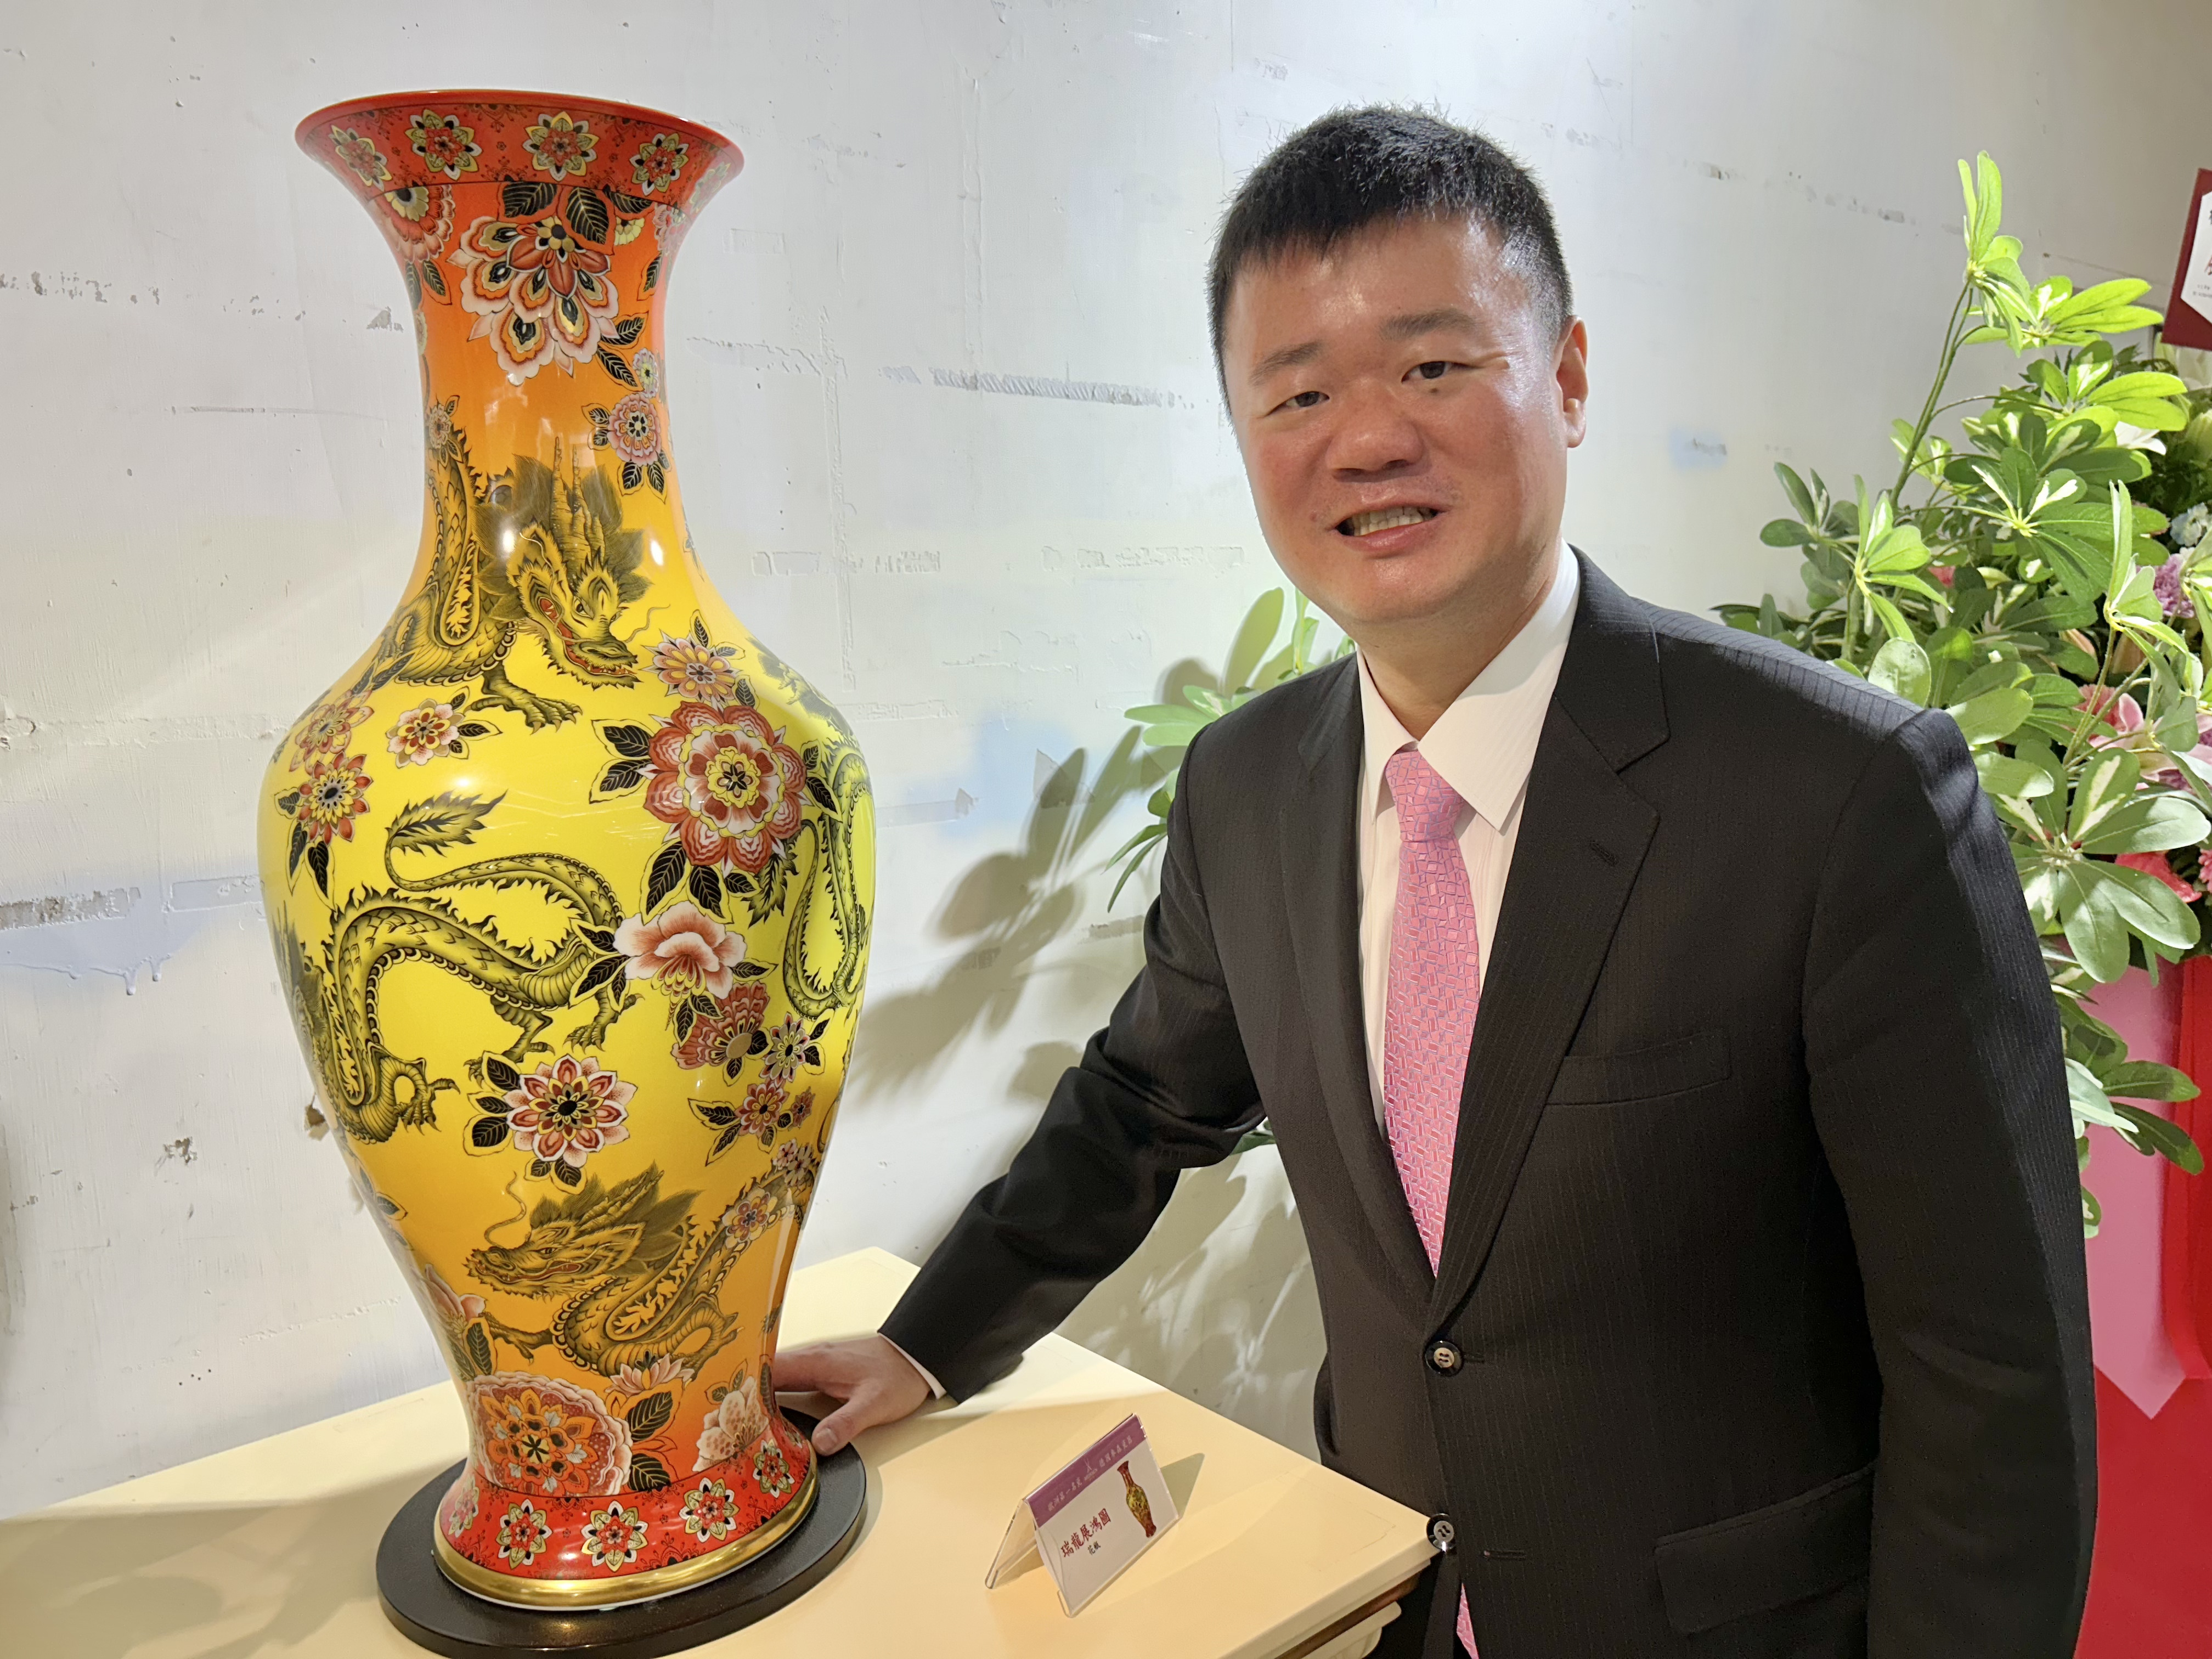 国裕精品执行董事栾慎寰展示售价高达800多万元的《瑞龙展鸿图》花瓶。记者宋健生/摄影